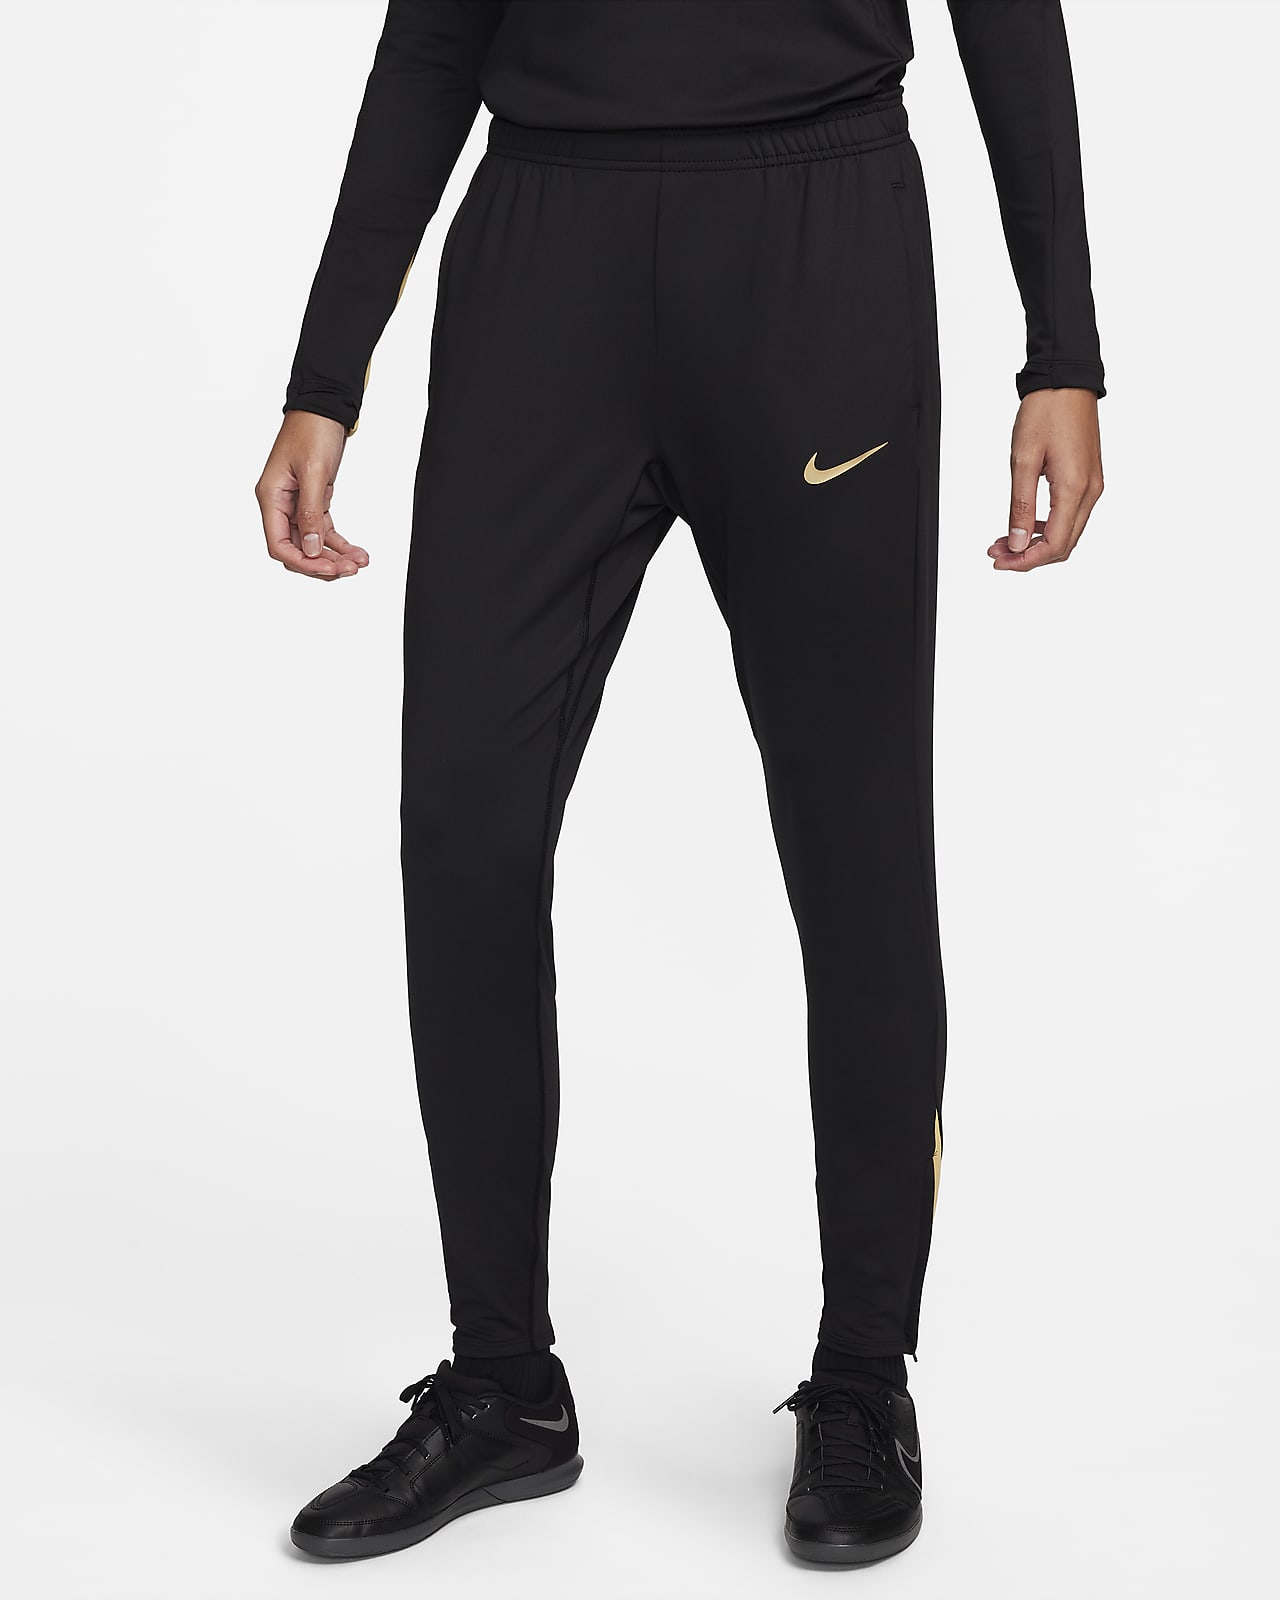 Nike Dri-FIT Strike Women's Soccer Pants - Black